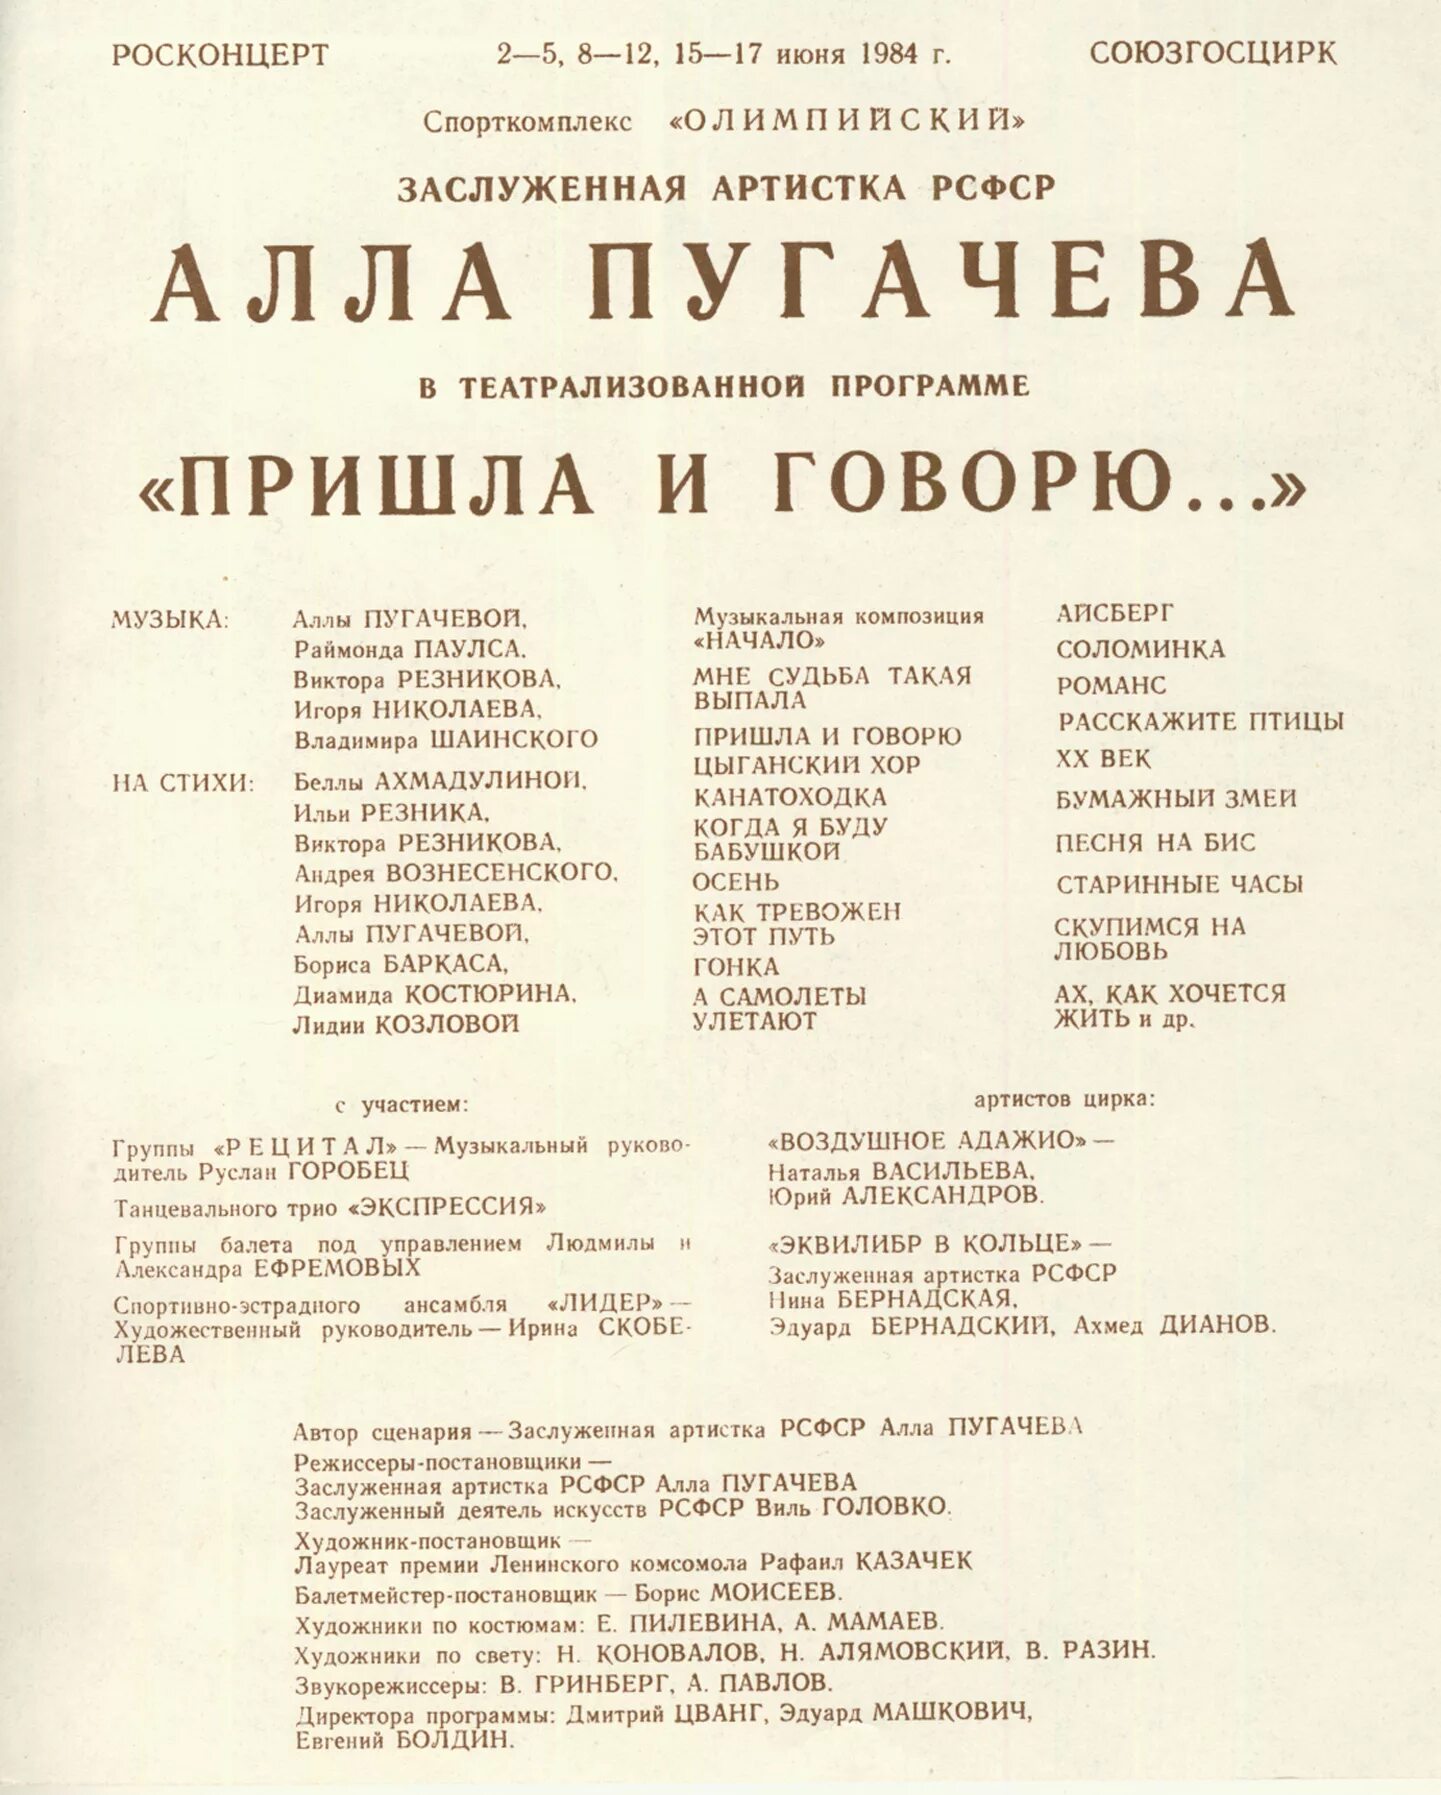 Пугачева пришла и говорю концертная программа. Афиша концерта Аллы Пугачевой. Концерт Пугачевой афиша.